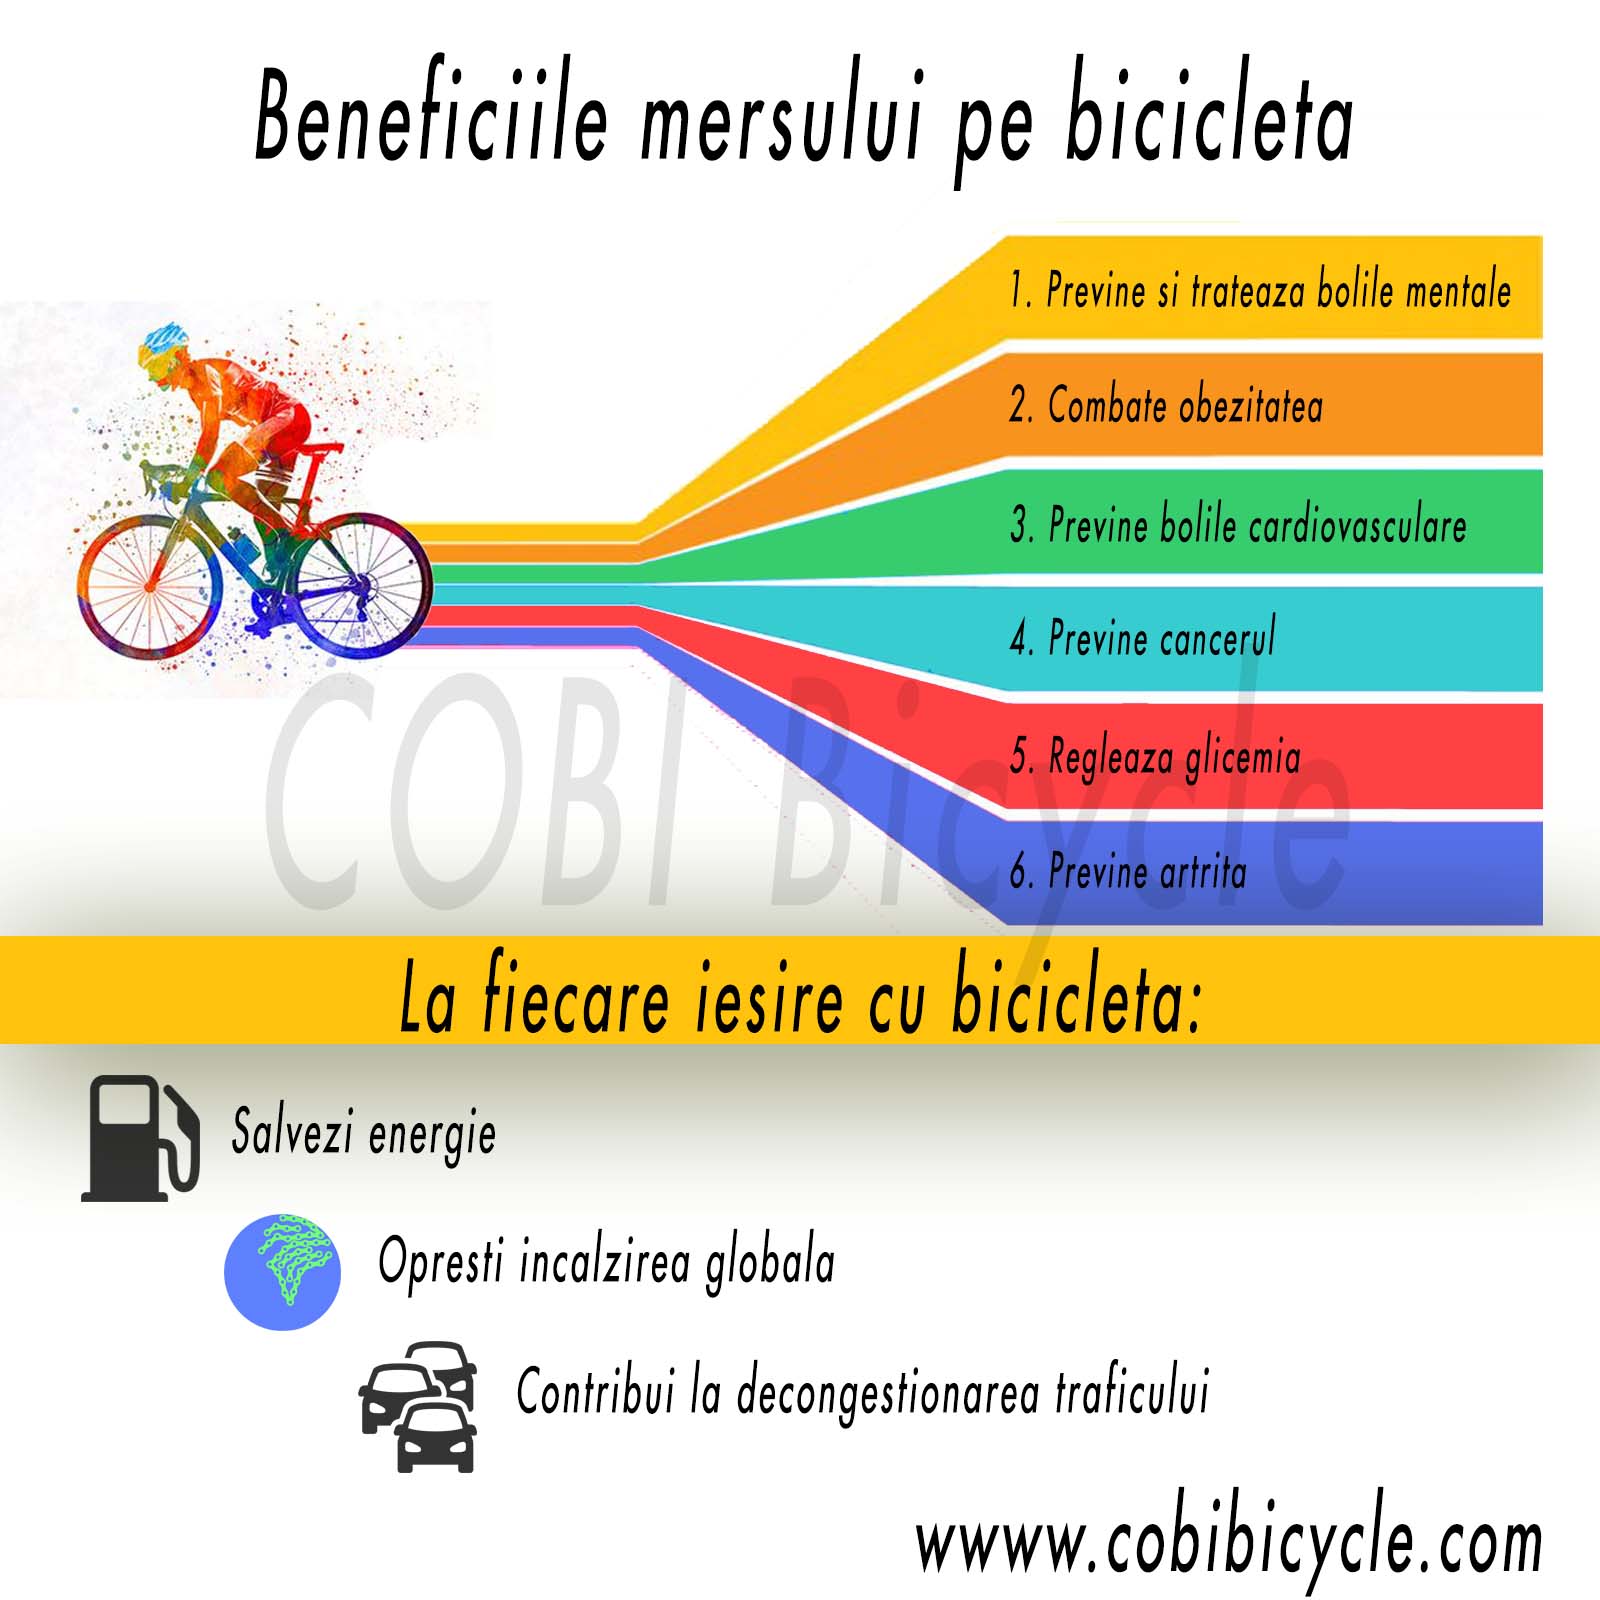 Beneficiile mersului pe bicicleta – De sa mergem cu bicicleta?